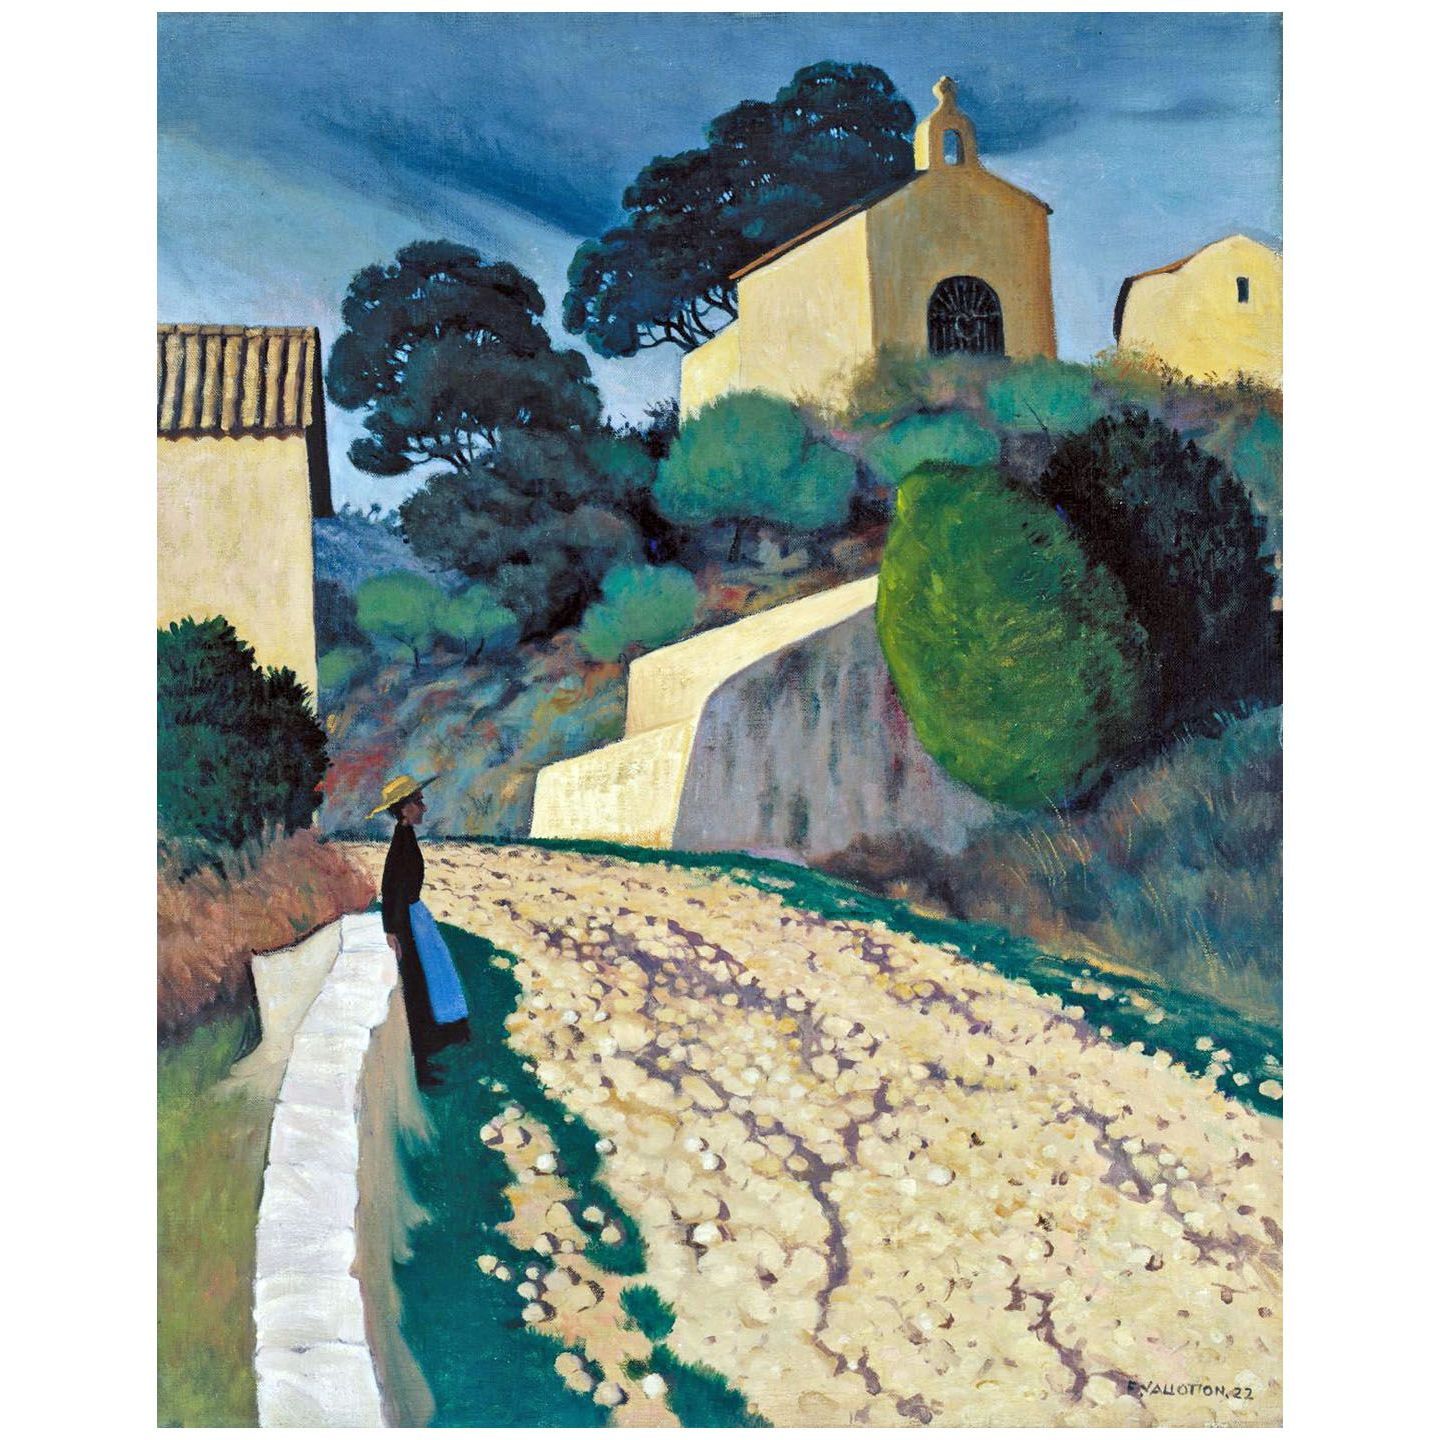 Felix Vallotton. Route à Saint-Paul-de-Vence. 1922. Tate Britain